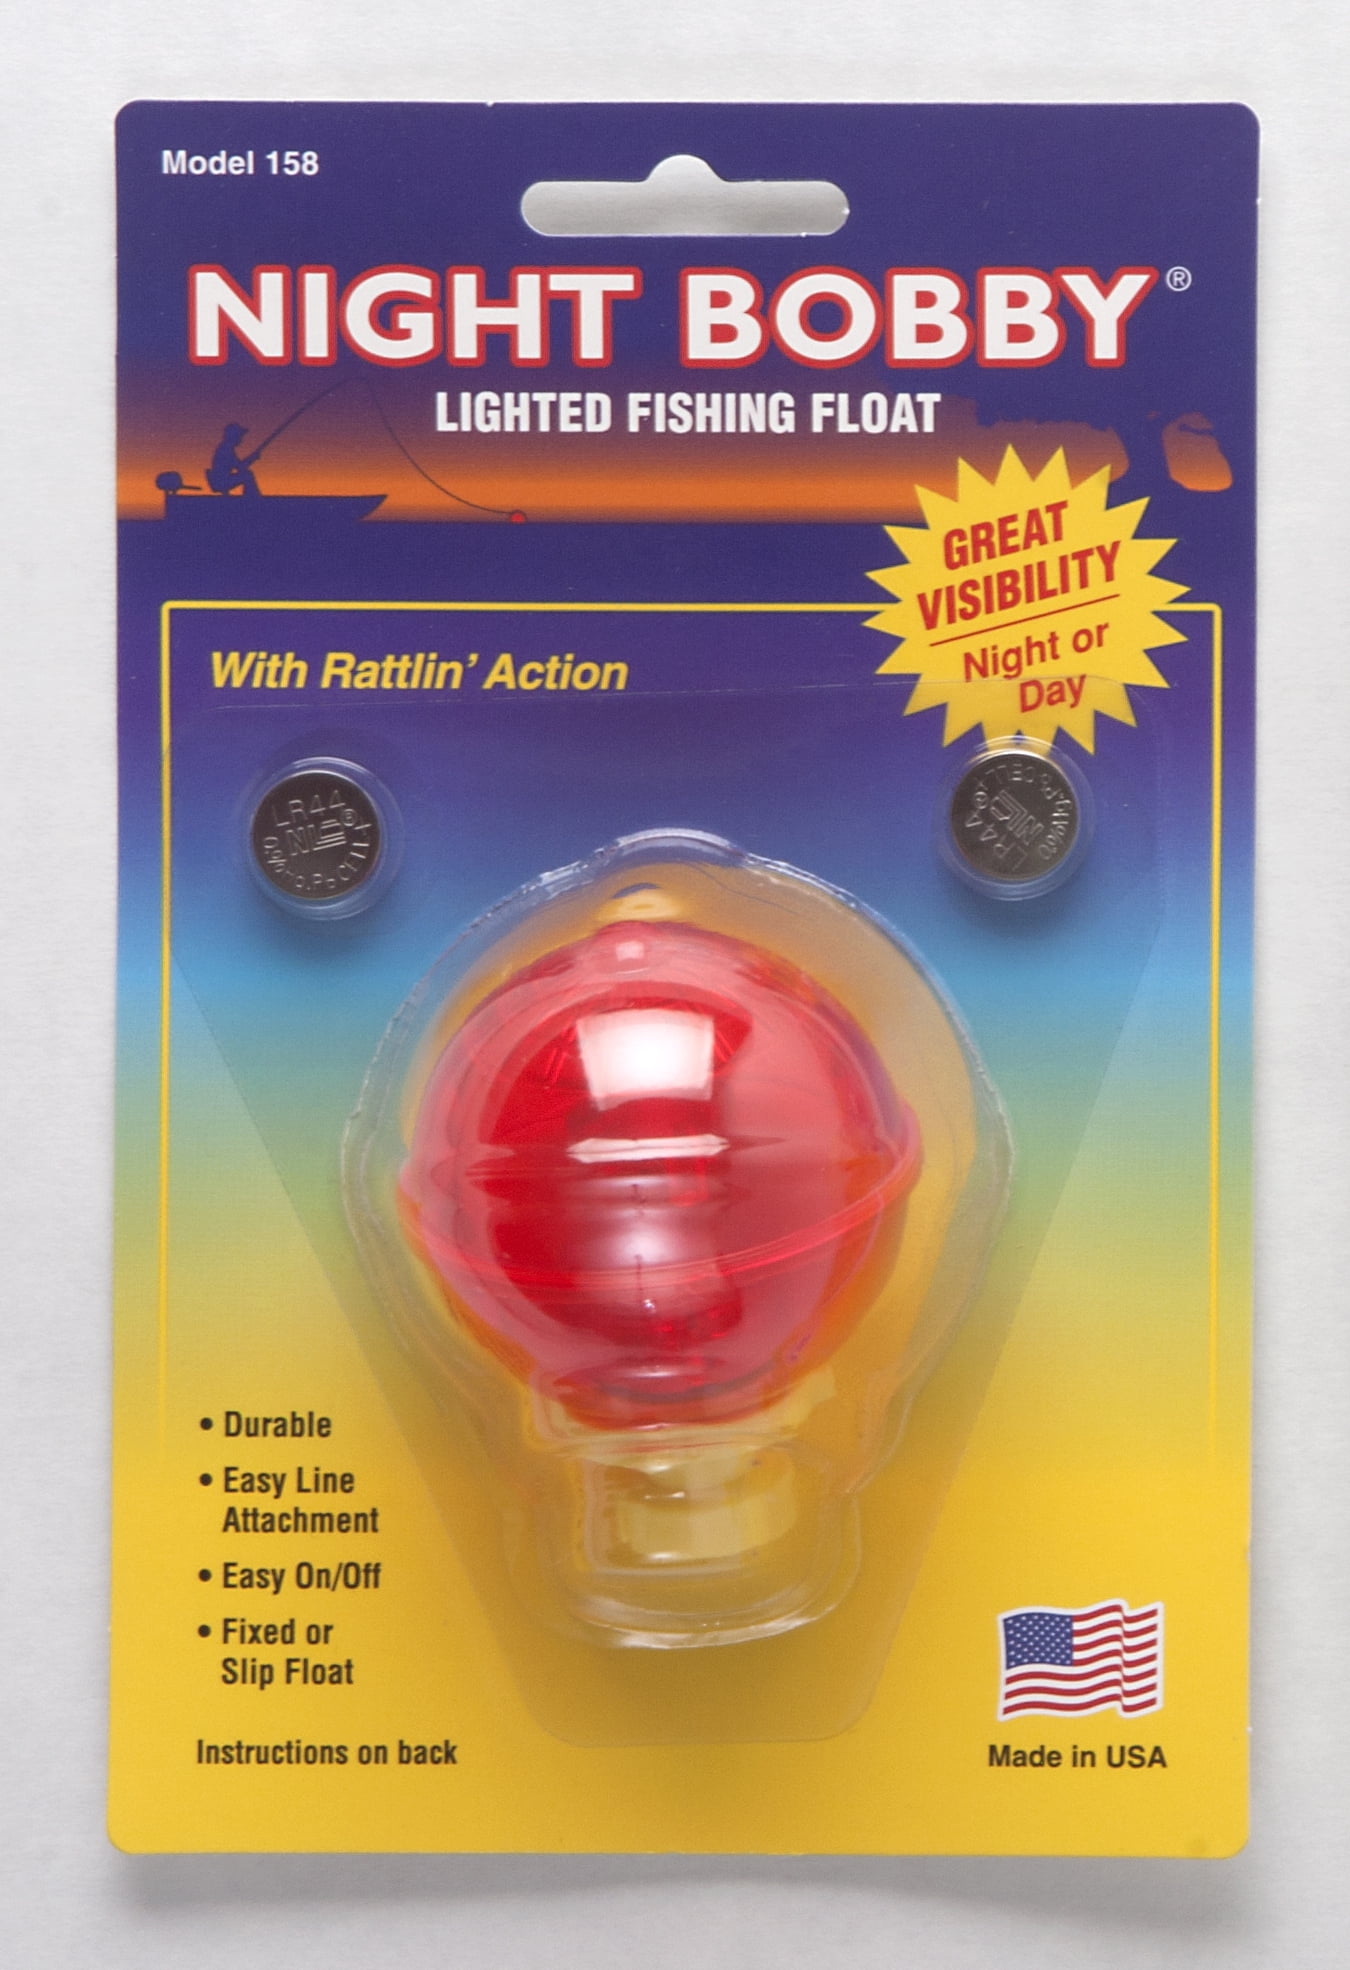 Night Bobby Lighted Fishing Float for Night Fishing, Orange, Large Round 